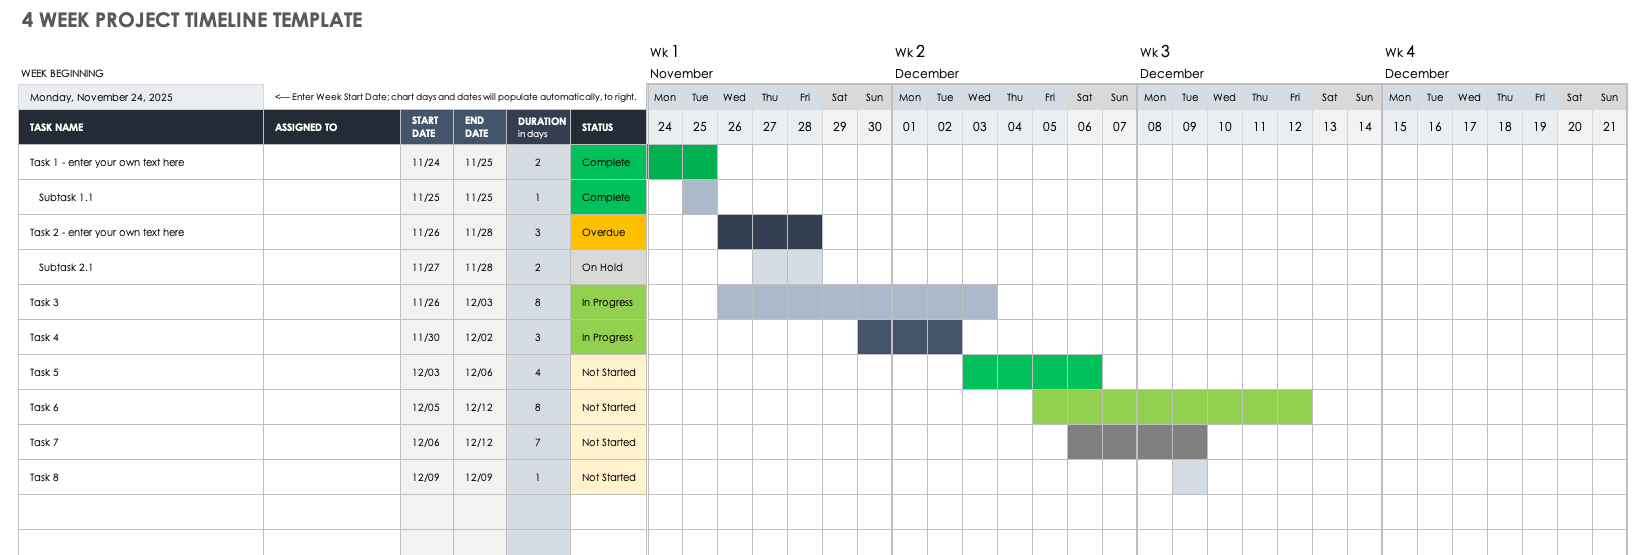 Free Construction Calendar Templates Smartsheet